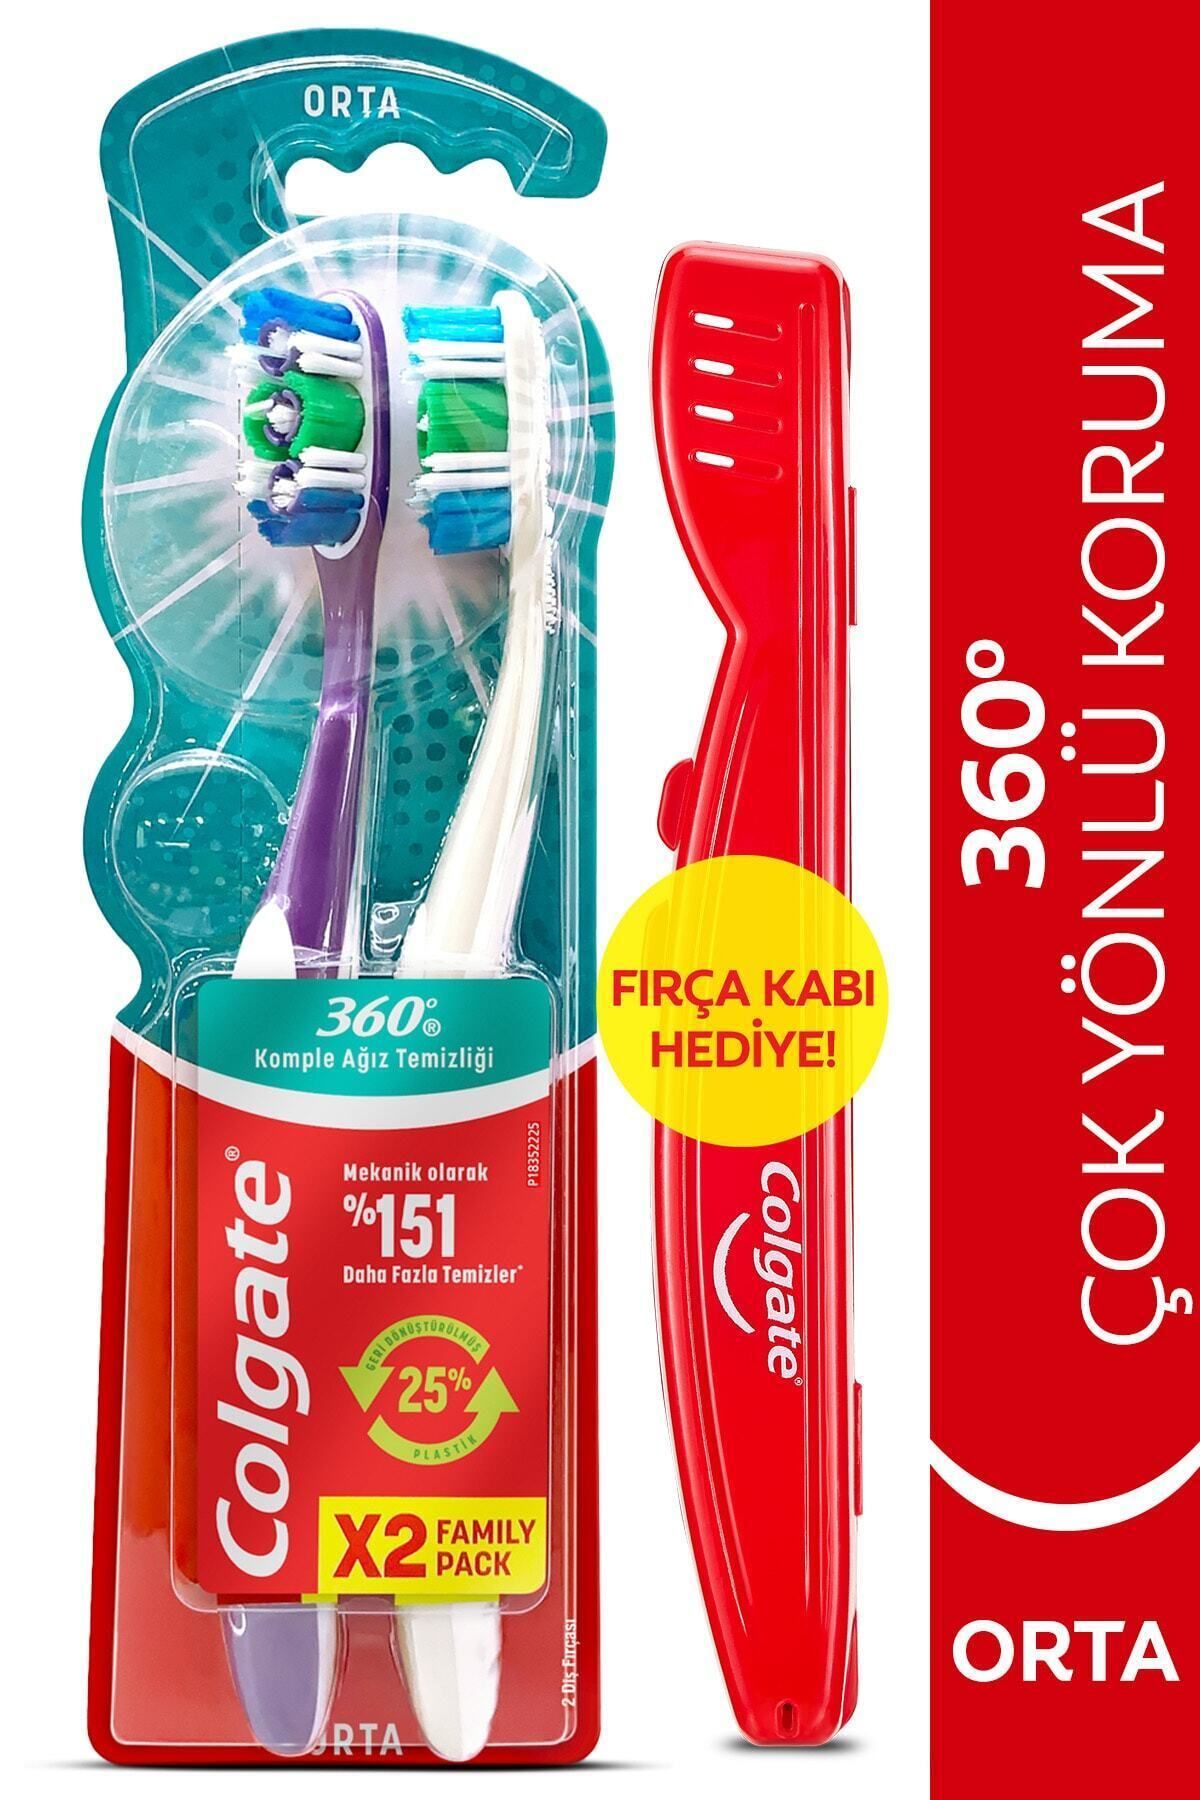 Colgate 360 Komple Ağız Temizliği Çok Yönlü Koruma Orta Diş Fırçası 1 1 & Fırça Kabı Hediye